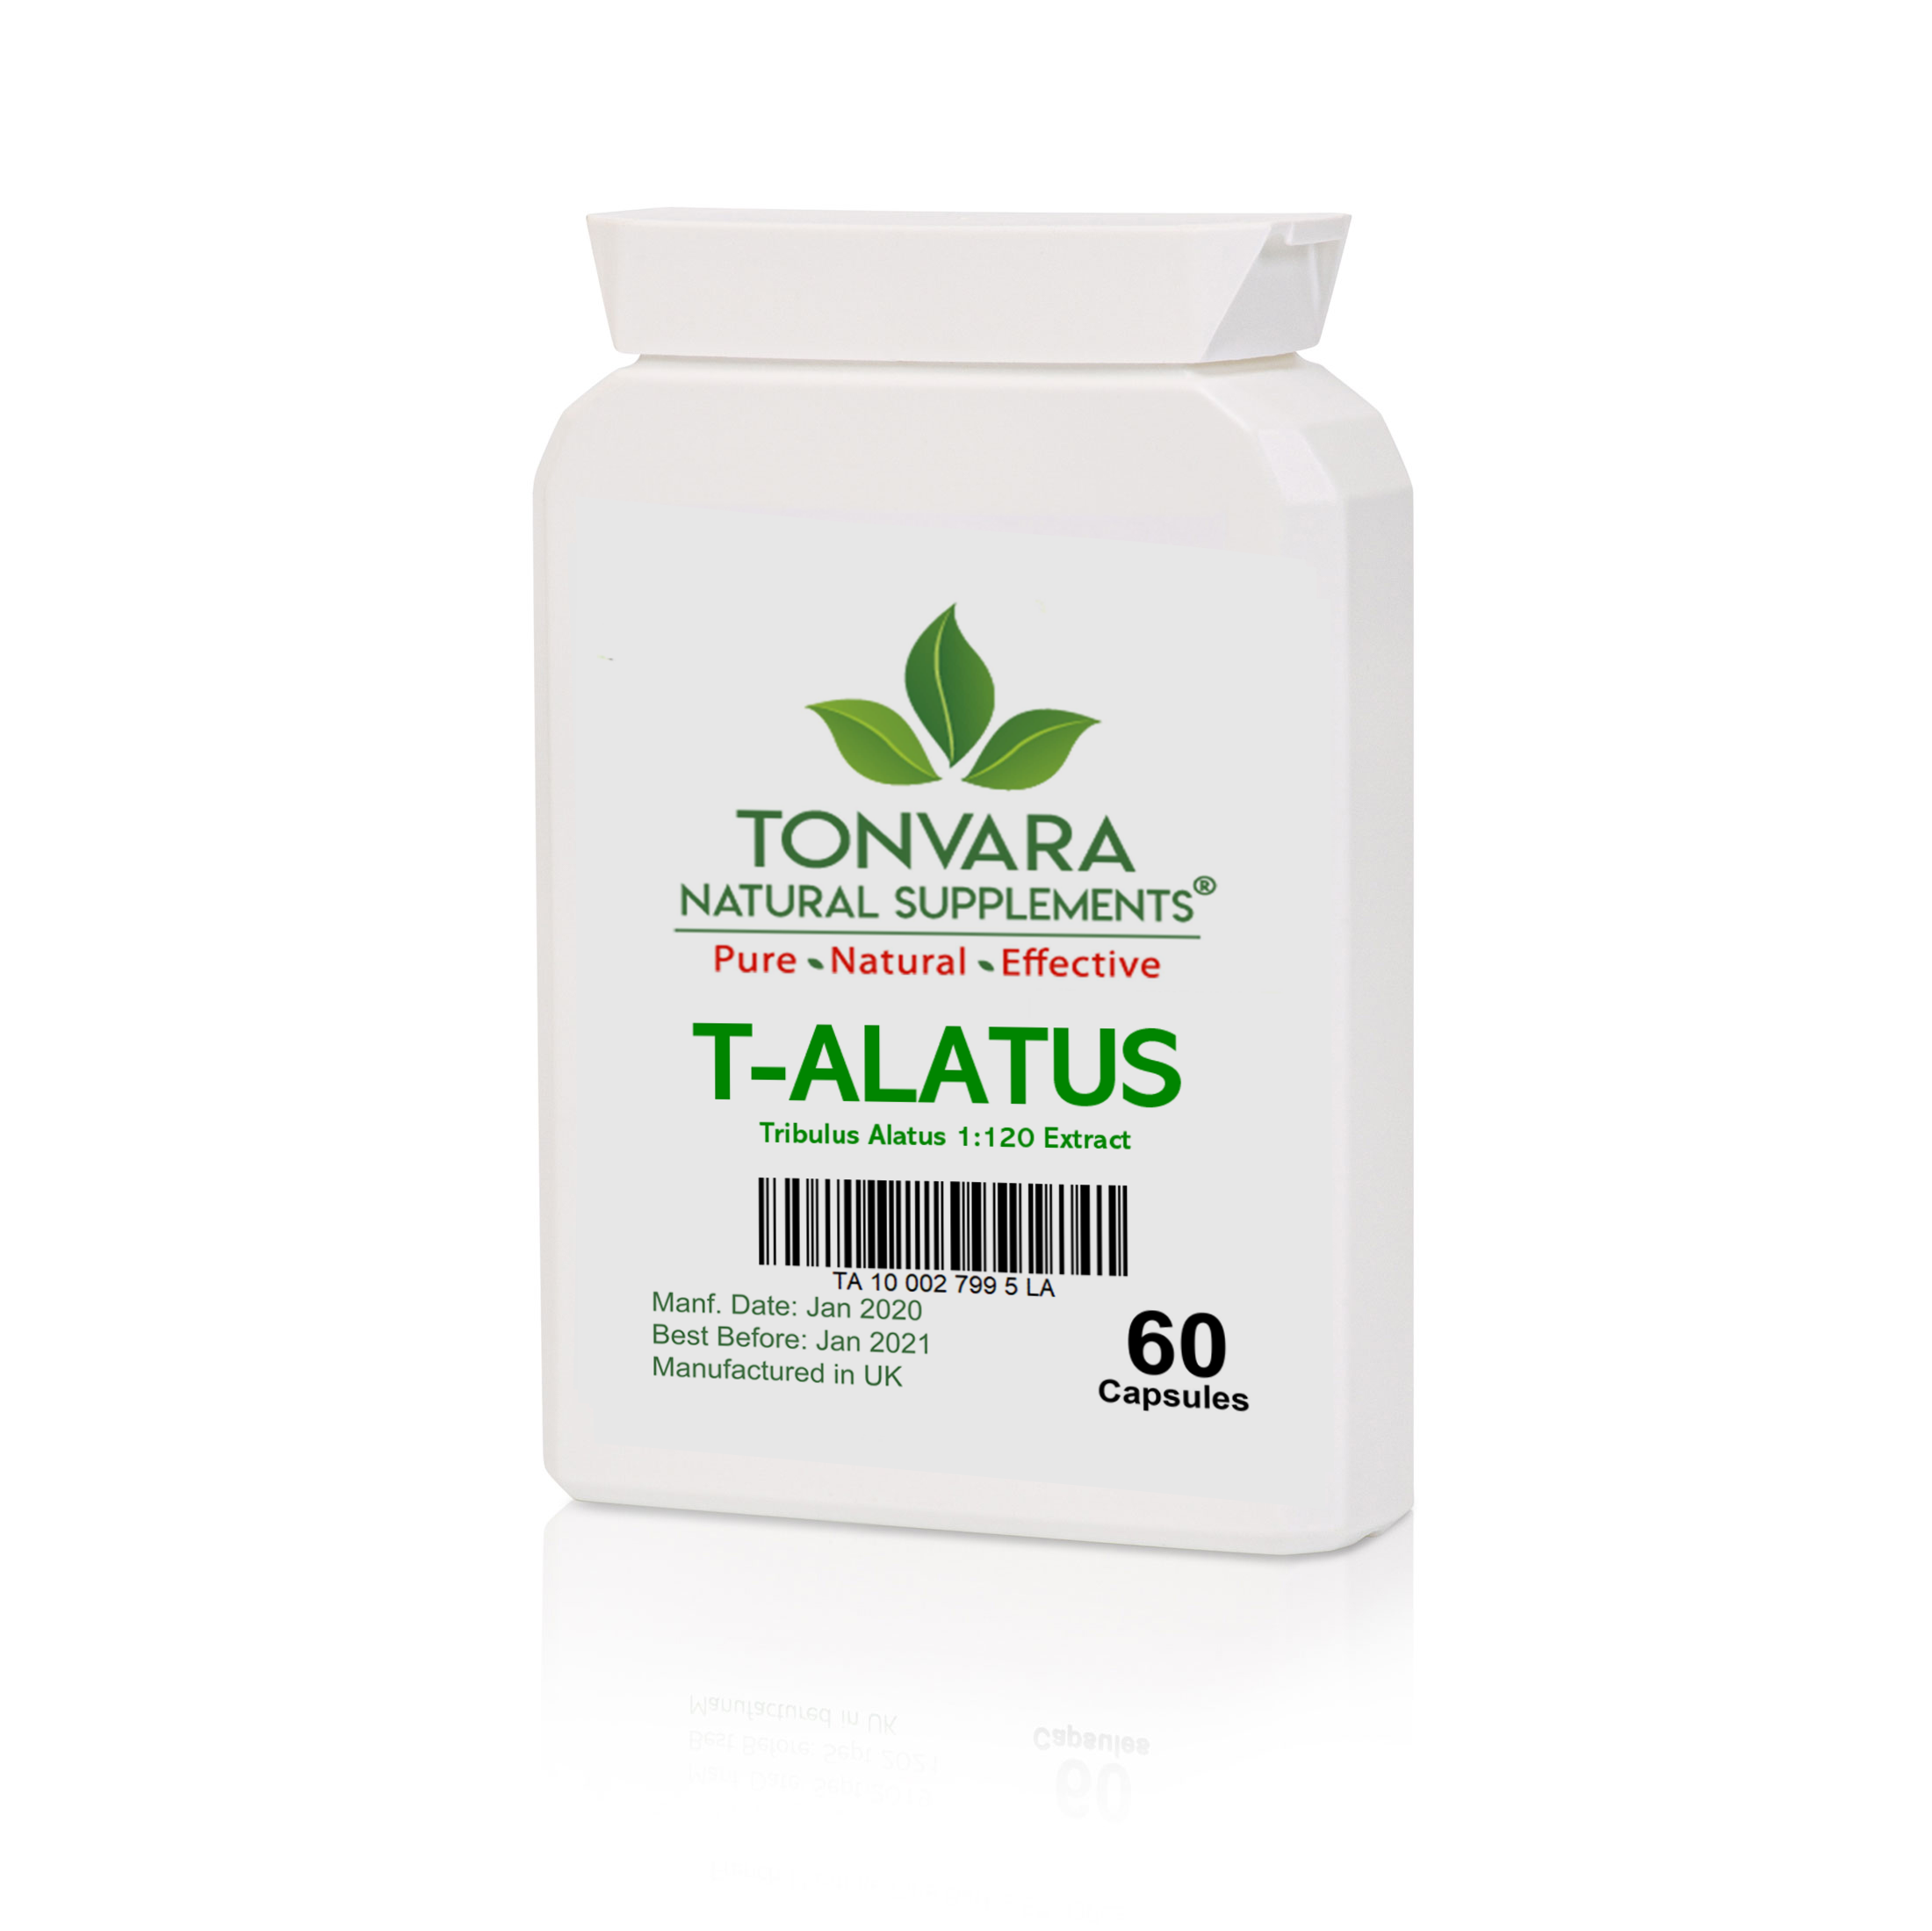 Tonvara T-Alatus 1:120 Pure Tribulus Alatus Extract - Superior to Tribulus Terrestris - now in capsules